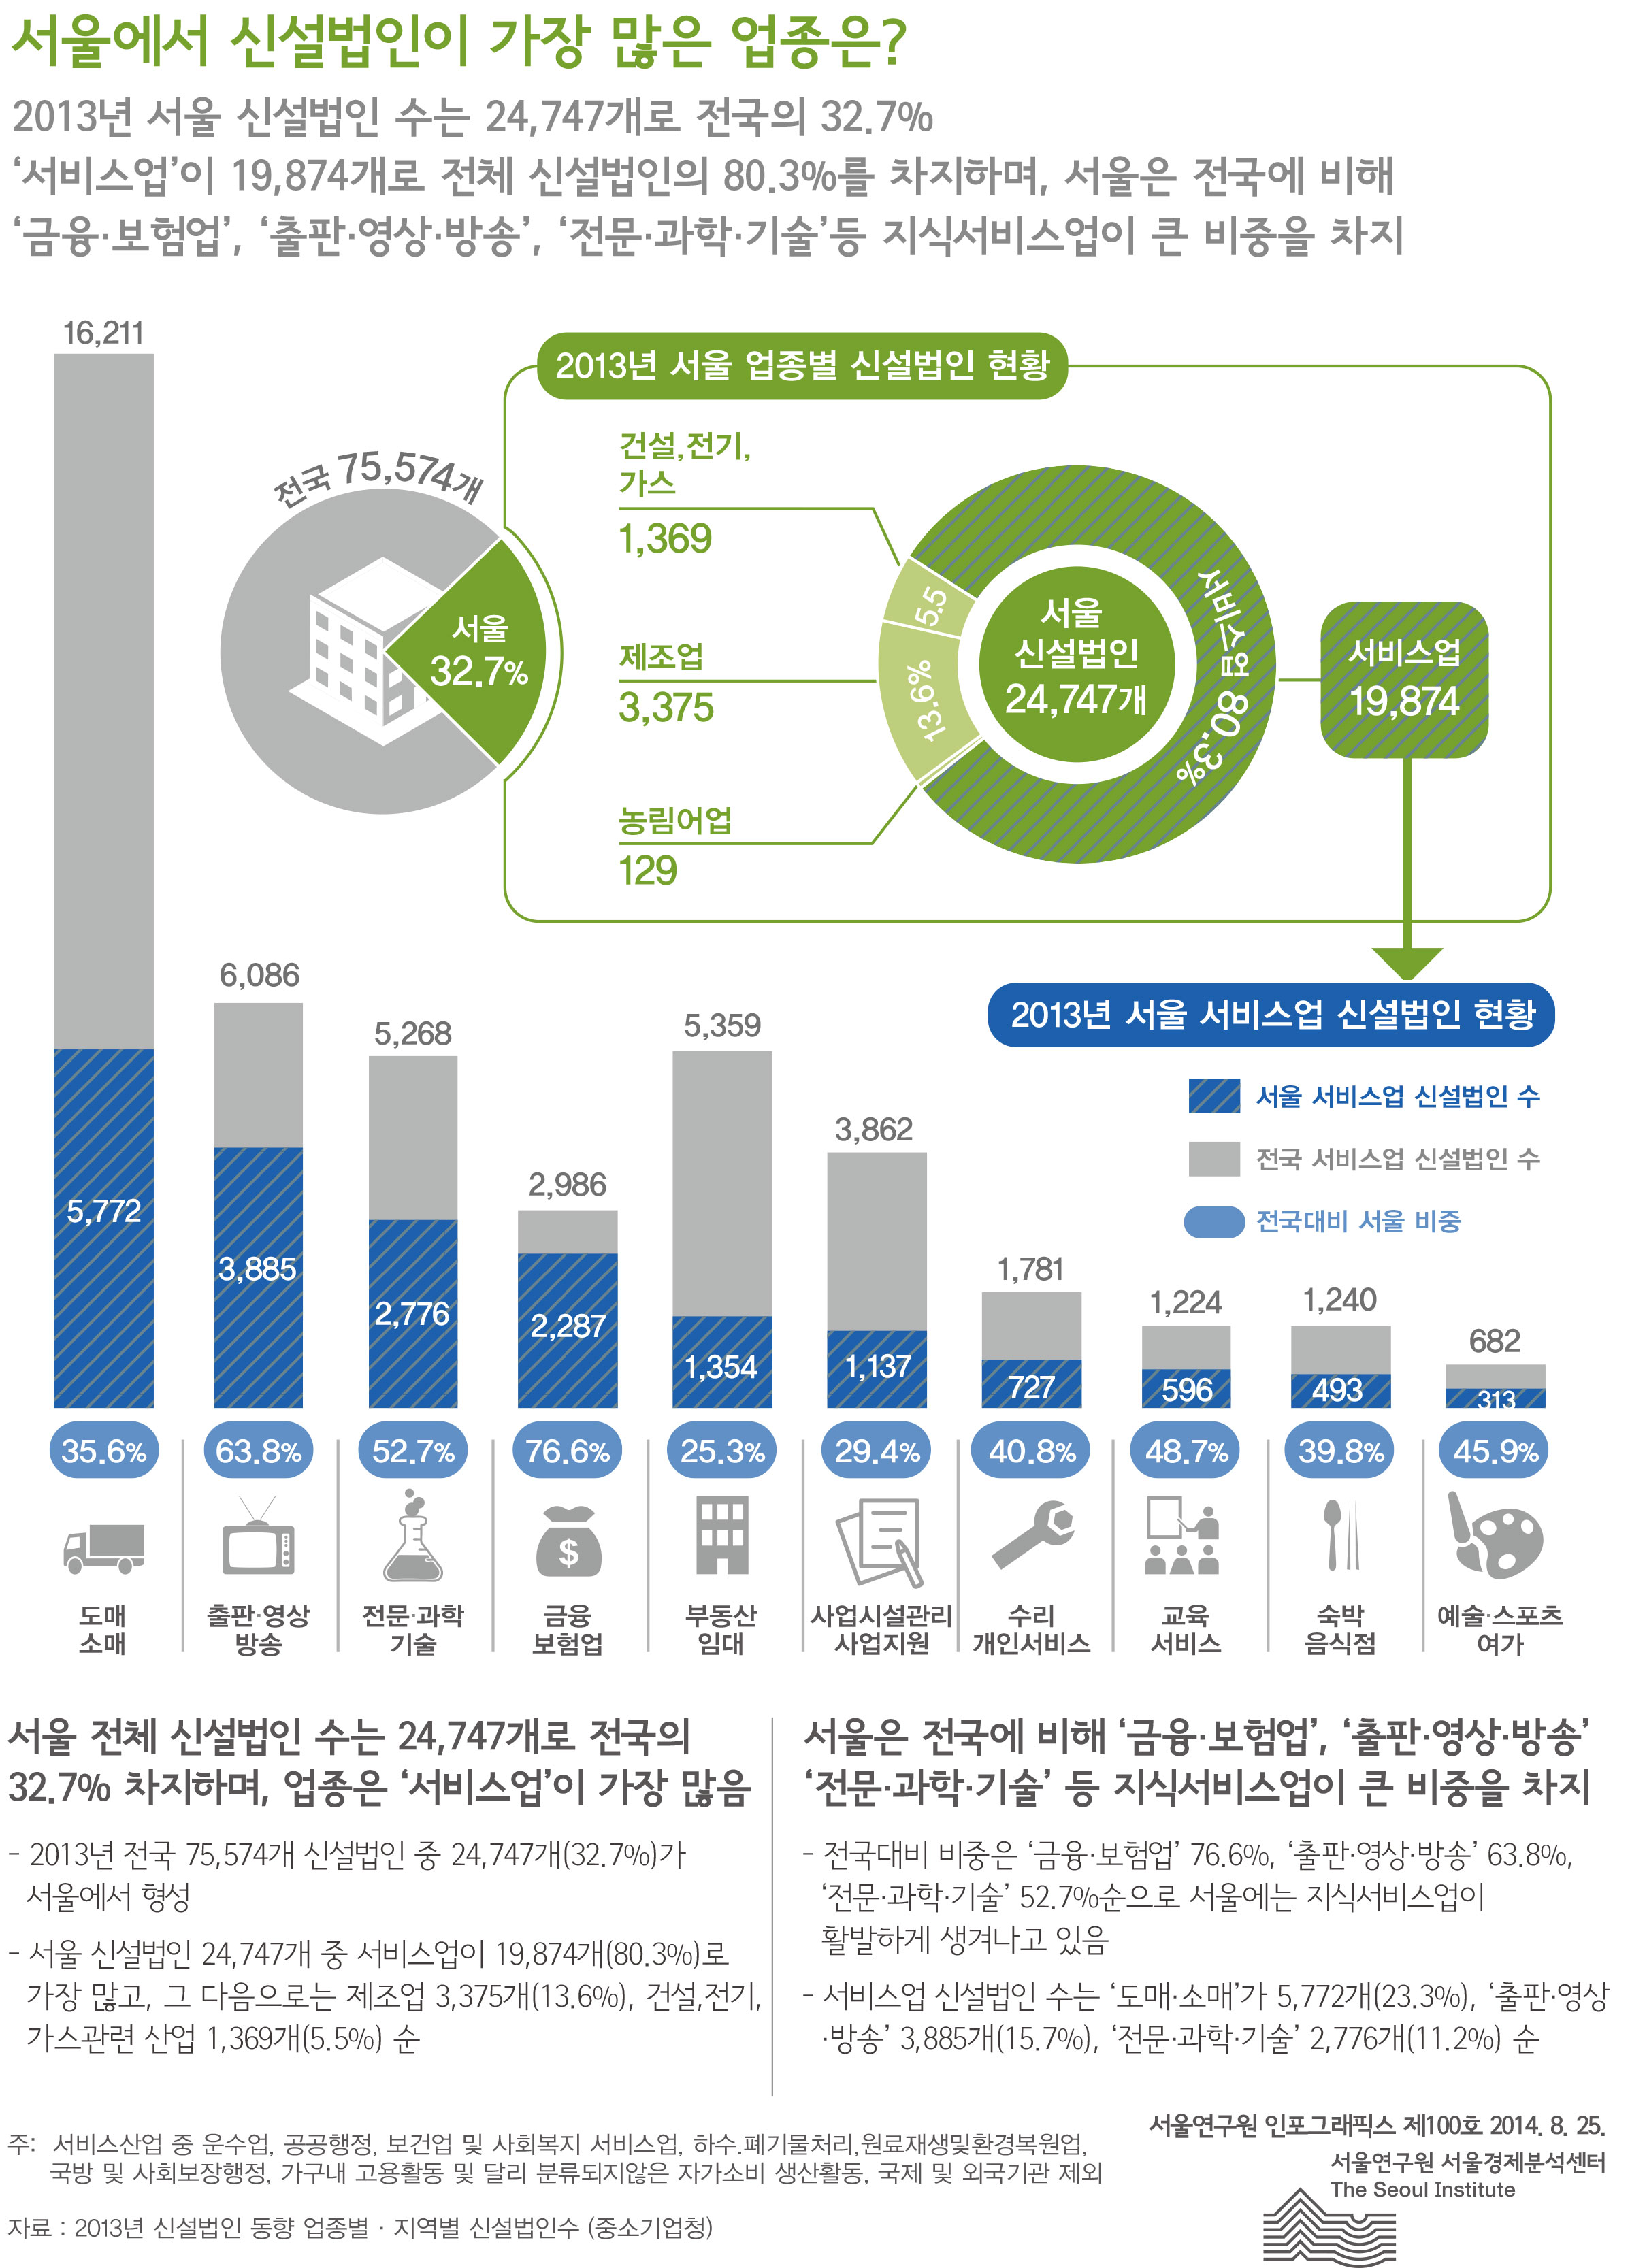 2서울에서 신설법인이 가장 많은 업종은? 서울인포그래픽스 제100호 2014년 8월 22일 2013년 서울 신설법인 수는 24,747개로 전국의 32.7% ‘서비스업’이 19,874개로 전체 신설법인의 80.3%를 차지하며, 서울은 전국에 비해 ‘금융·보험업’, ‘출판·영상·방송’, ‘전문·과학·기술’등 지식서비스업이 큰 비중을 차지함으로 정리 될 수 있습니다. 인포그래픽으로 제공되는 그래픽은 하단에 표로 자세히 제공됩니다.